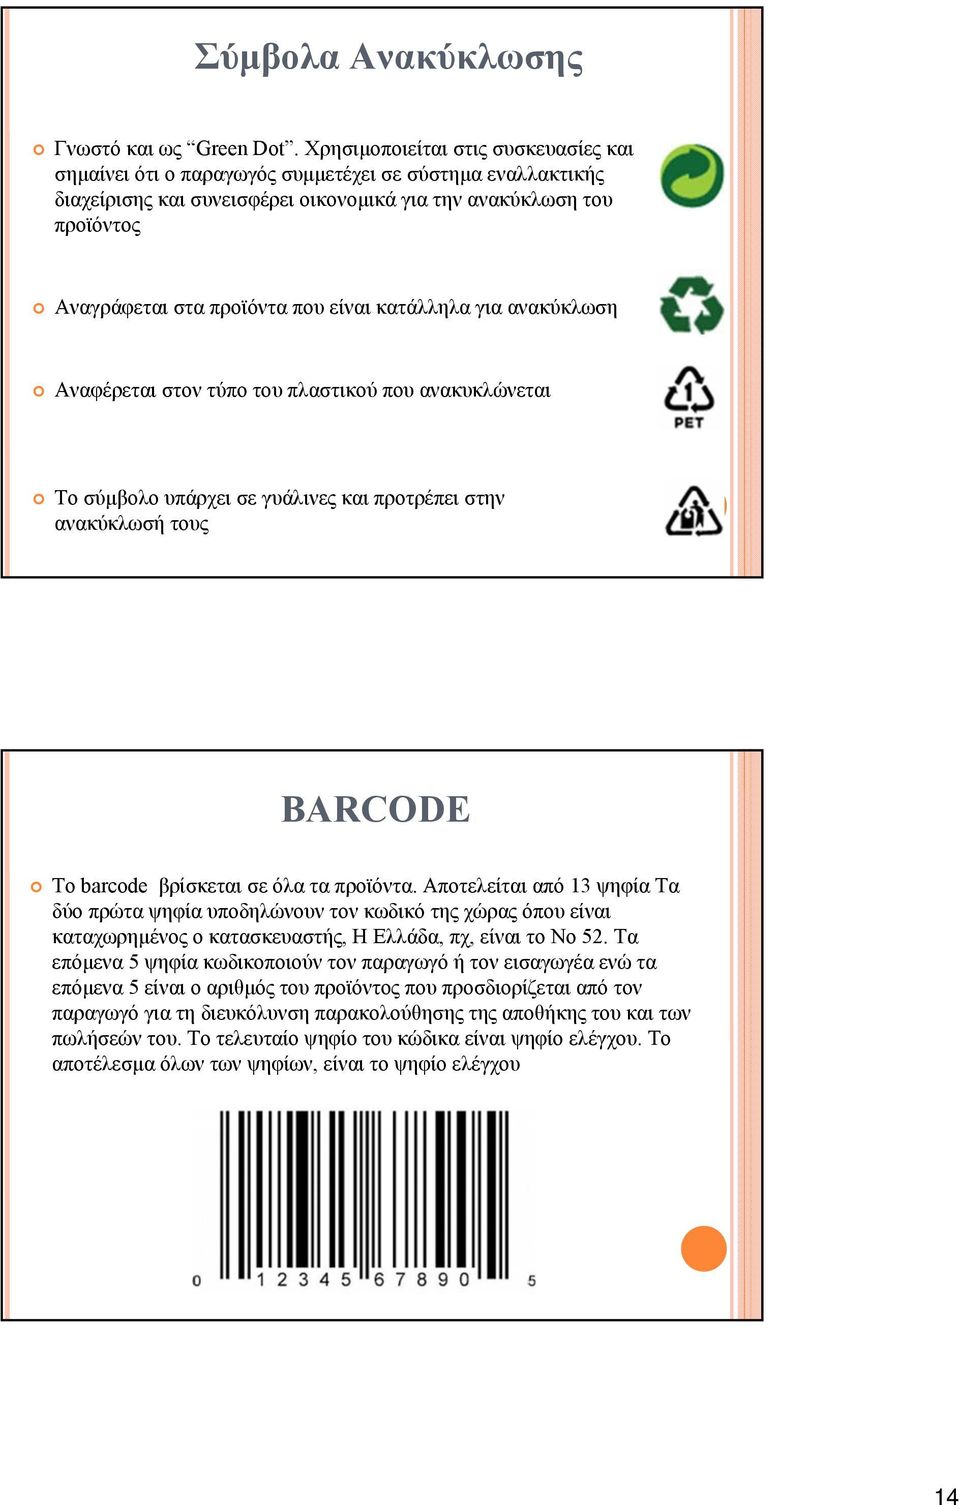 είναι κατάλληλα για ανακύκλωση Αναφέρεται στον τύπο του πλαστικού που ανακυκλώνεται Το σύμβολο υπάρχει σε γυάλινες και προτρέπει στην ανακύκλωσή τους BARCODE Το barcode βρίσκεται σε όλα τα προϊόντα.